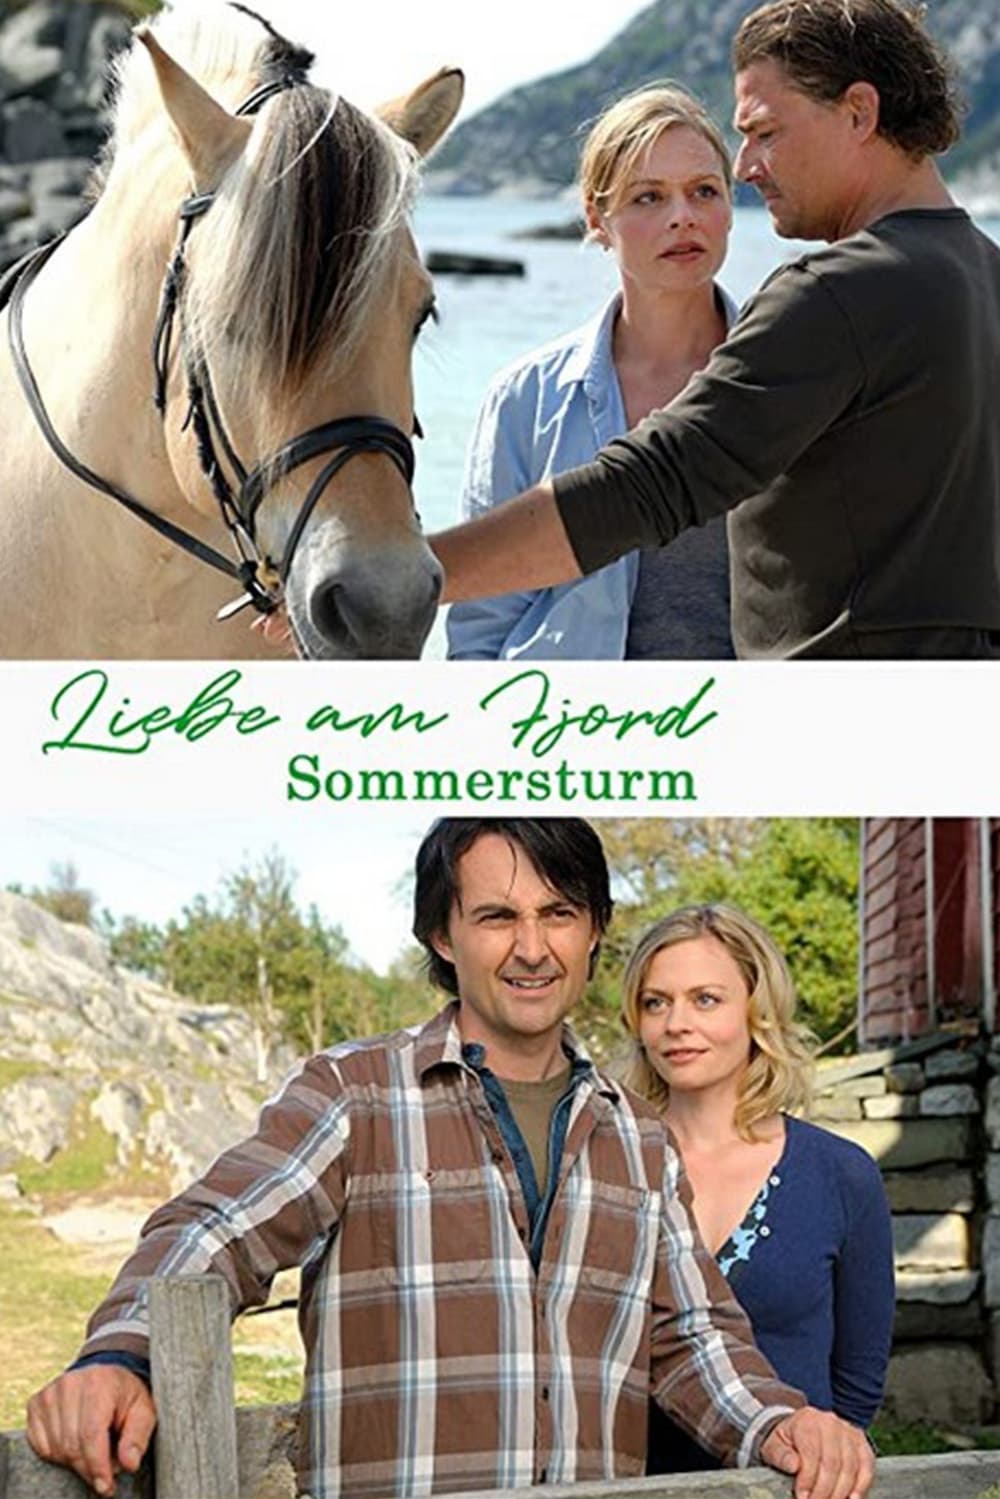 Liebe am Fjord: Sommersturm (2010)